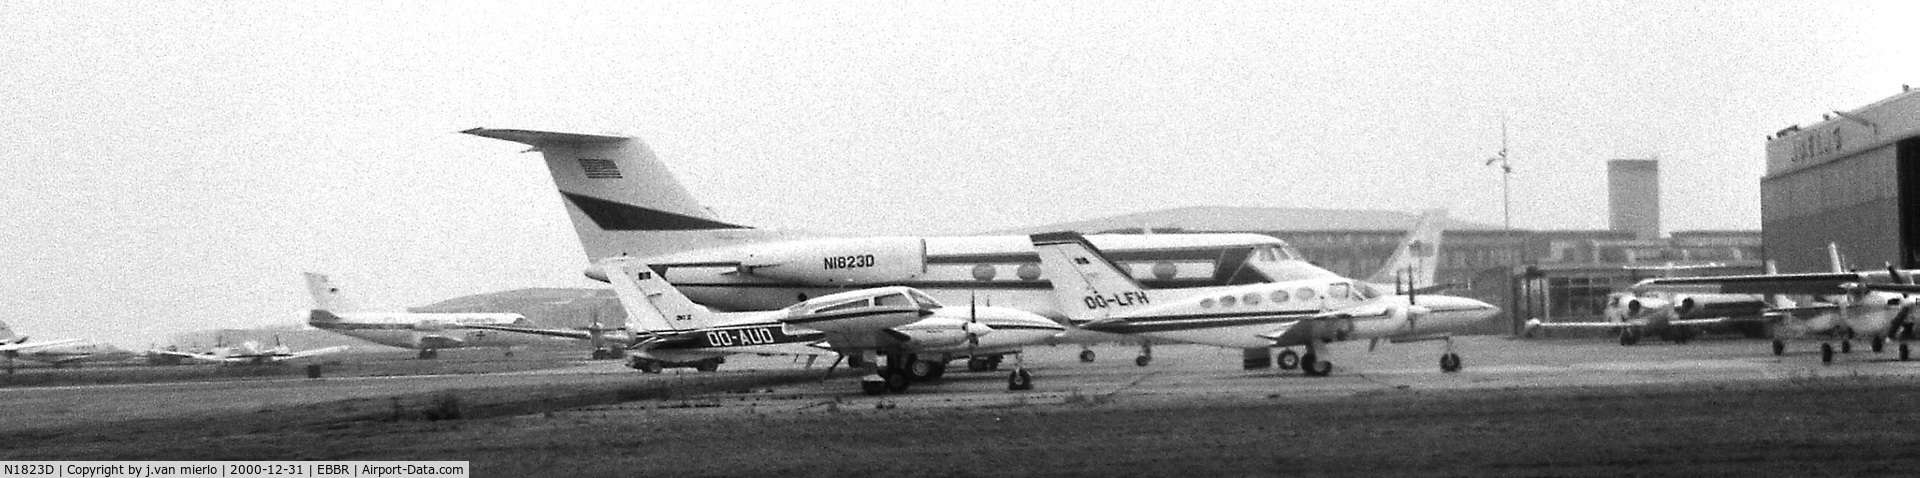 N1823D, 1969 Grumman G-1159 Gulfstream II SP C/N 59, Brussels ABELAG